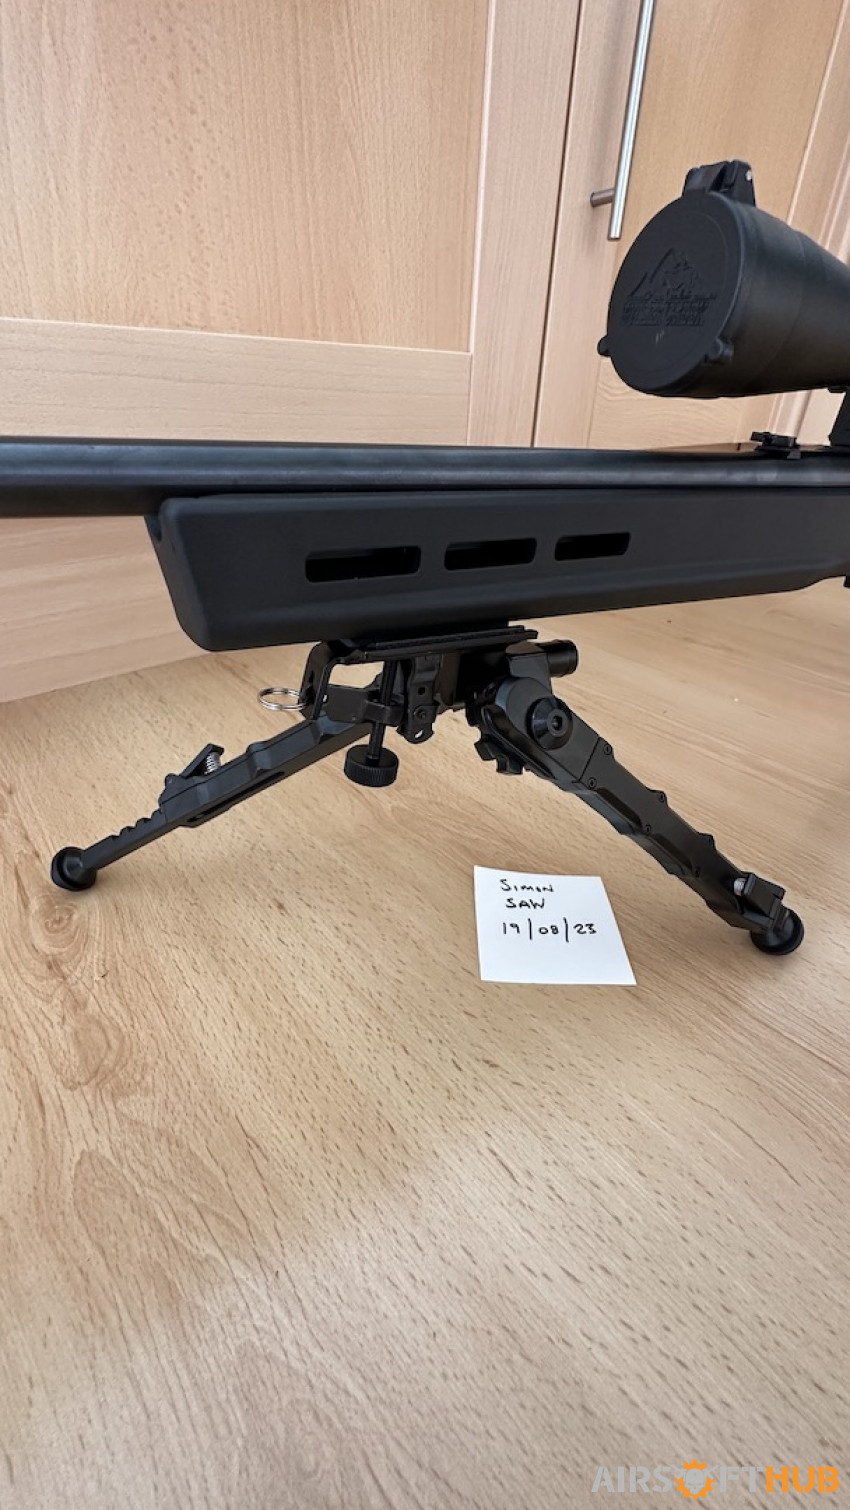 Multi possition Sniper Bipod - Used airsoft equipment